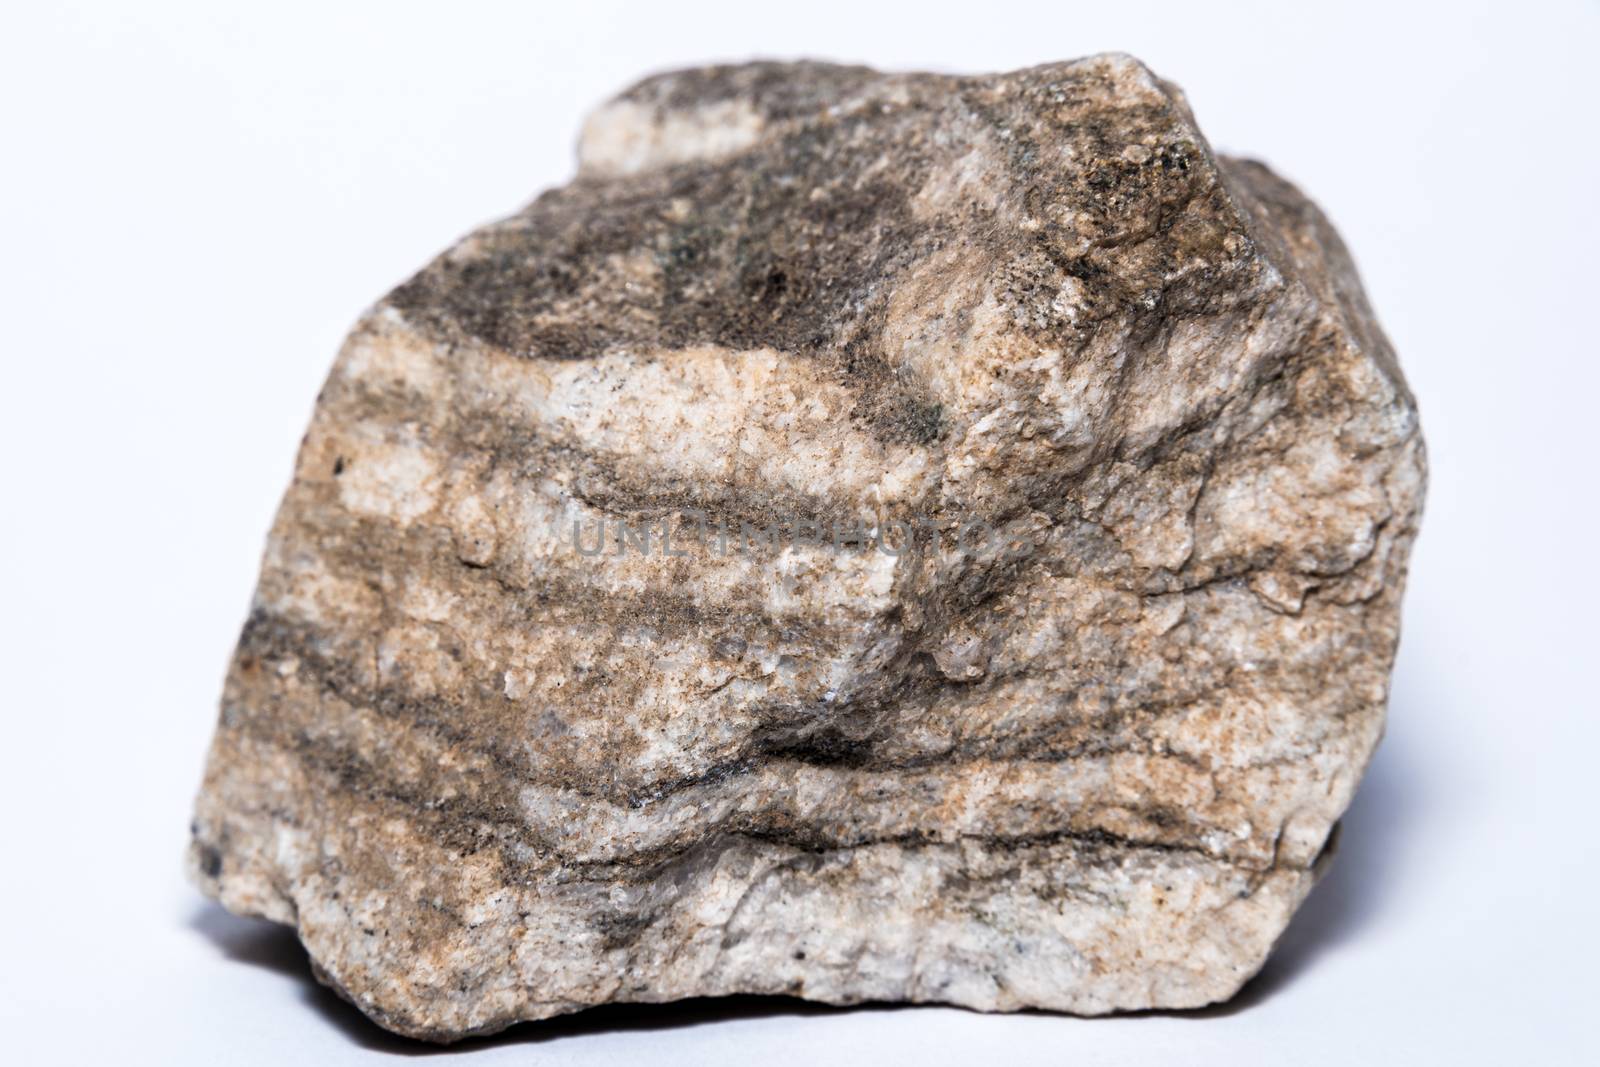 A Piece of hard ground rock of Manhattan granite ground rock